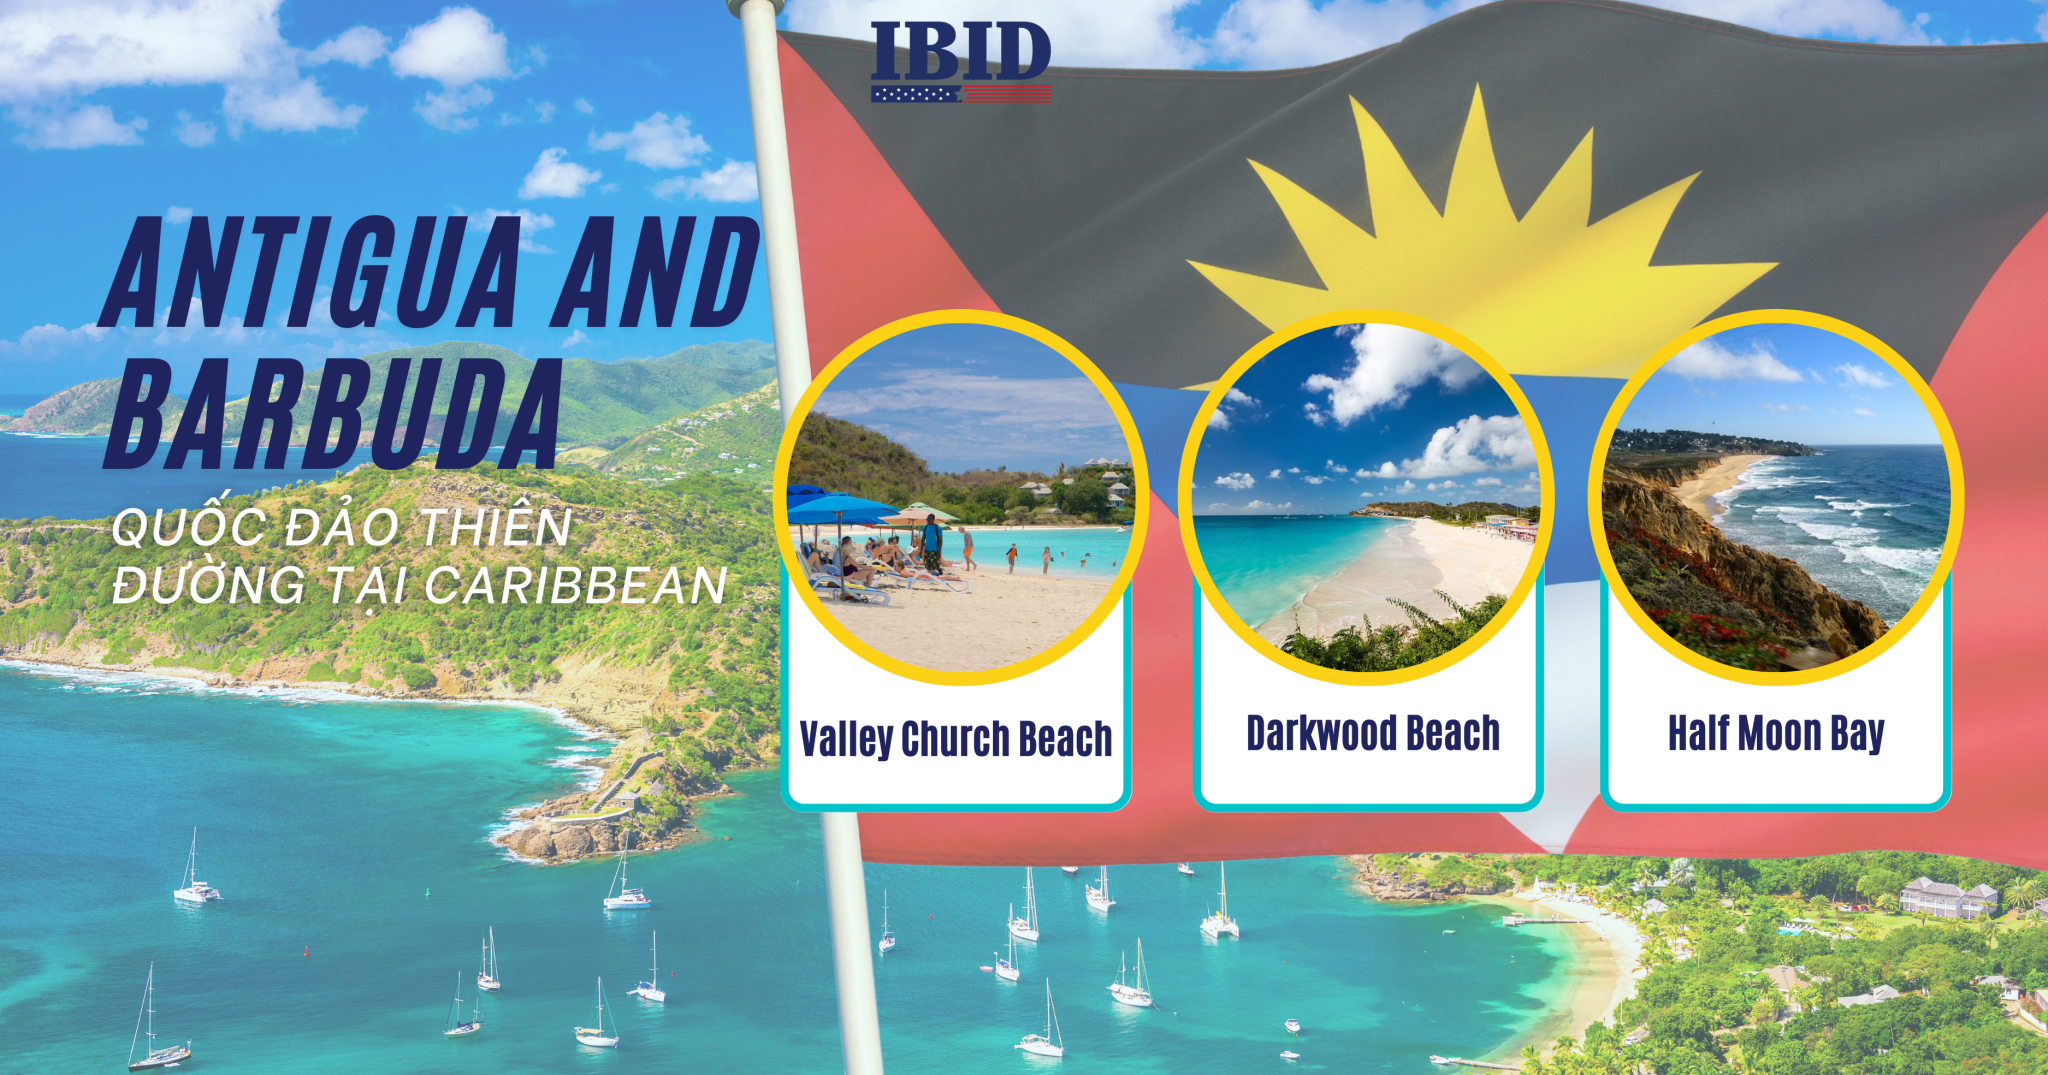 Antigua và Barbuda – Quốc đảo thiên đường tại Caribbean